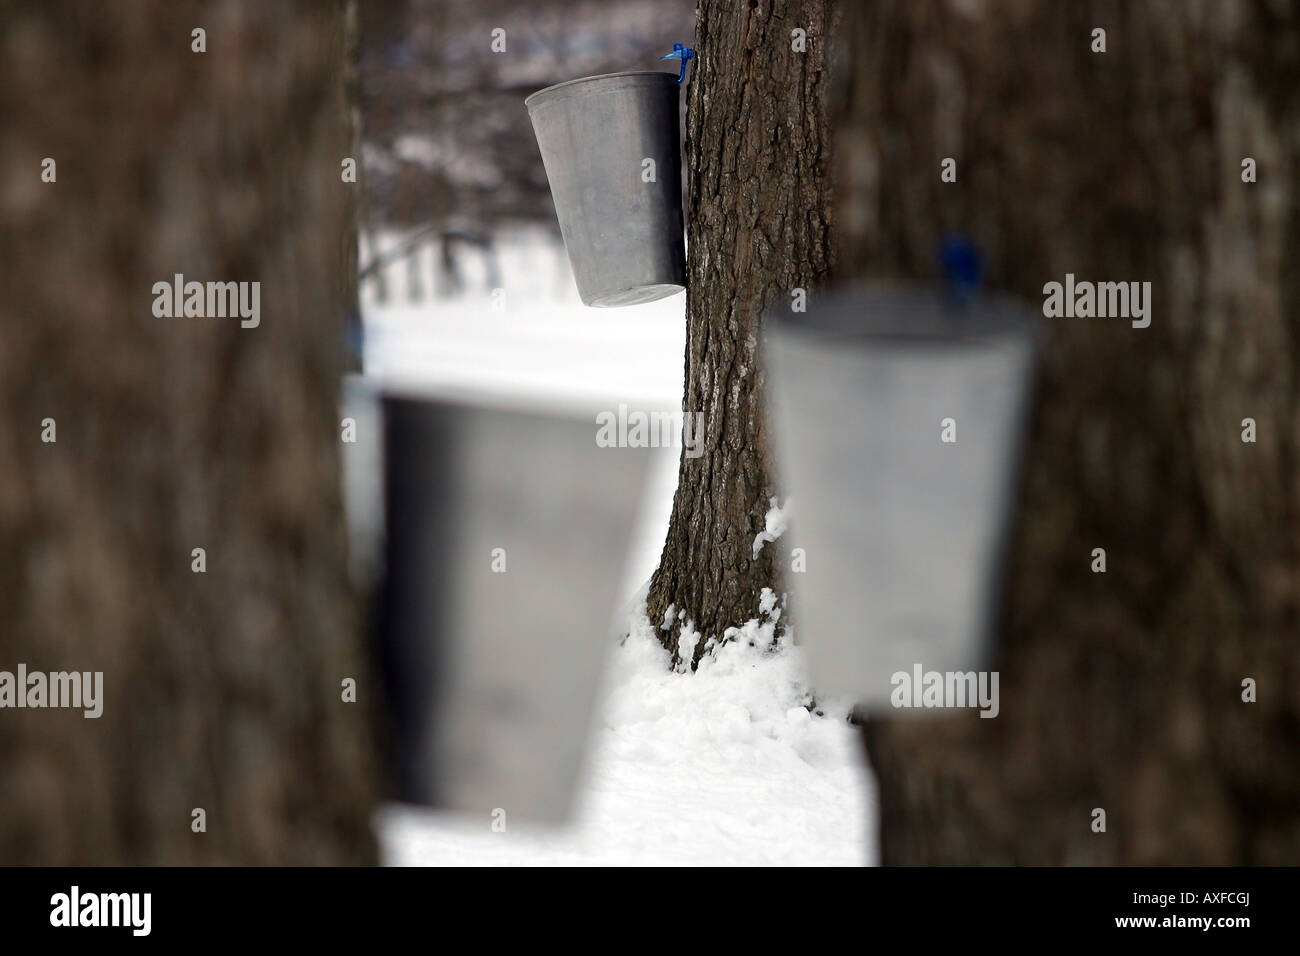 Sammeleimer hängen an Maple Tree's in einem kanadischen ZuckerBush, während die Saison mit Ahorn Sirup beginnt. Stockfoto